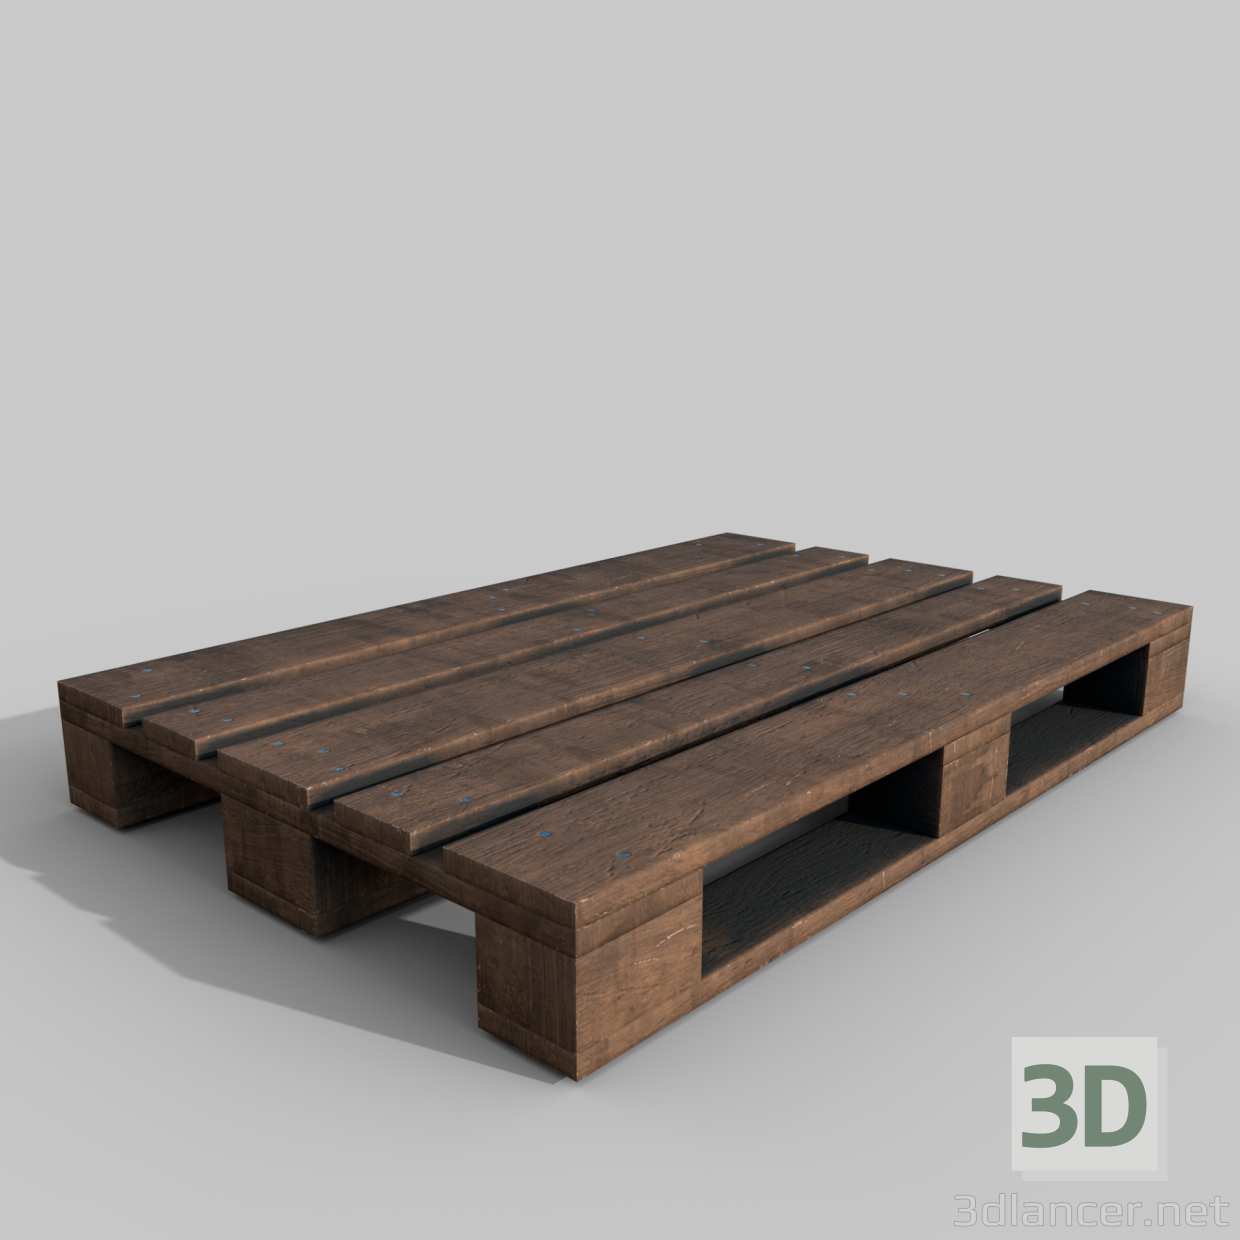 3d wooden pallet model buy - render